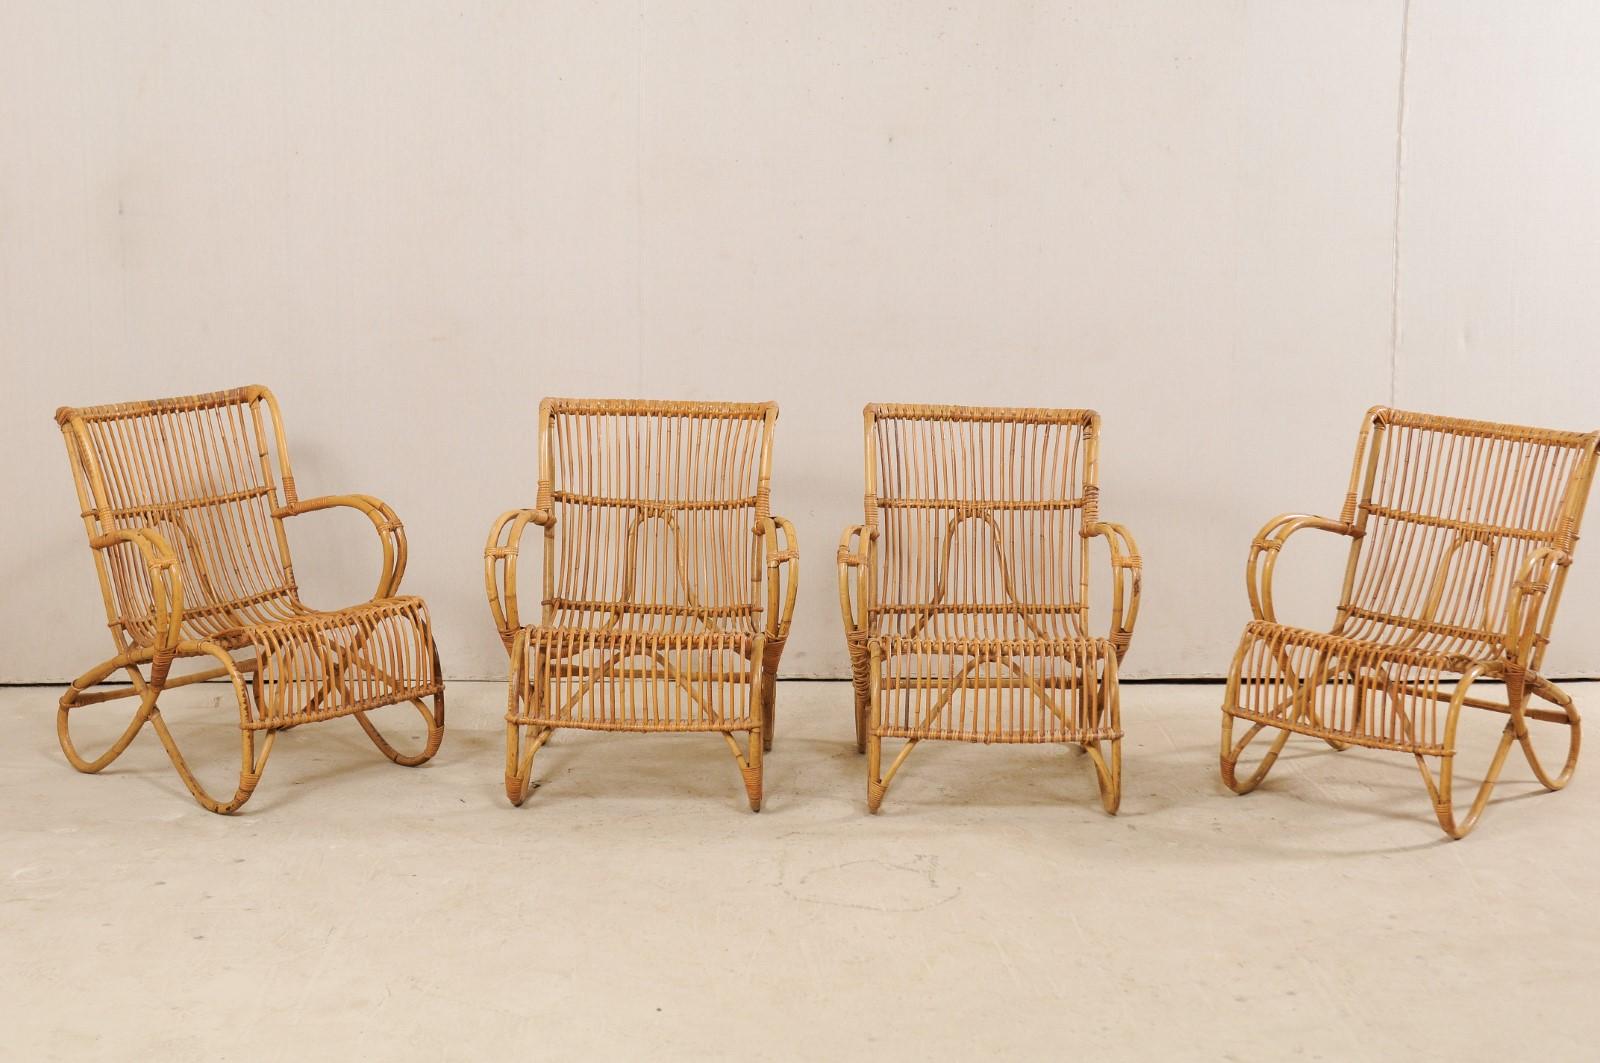 Un ensemble de chaises de patio en rotin vintage français. Cet ensemble de quatre chaises françaises se caractérise par un design aérien et tout en courbes, avec un confort décontracté à l'esprit. Les chaises sont construites en canne, qui a été